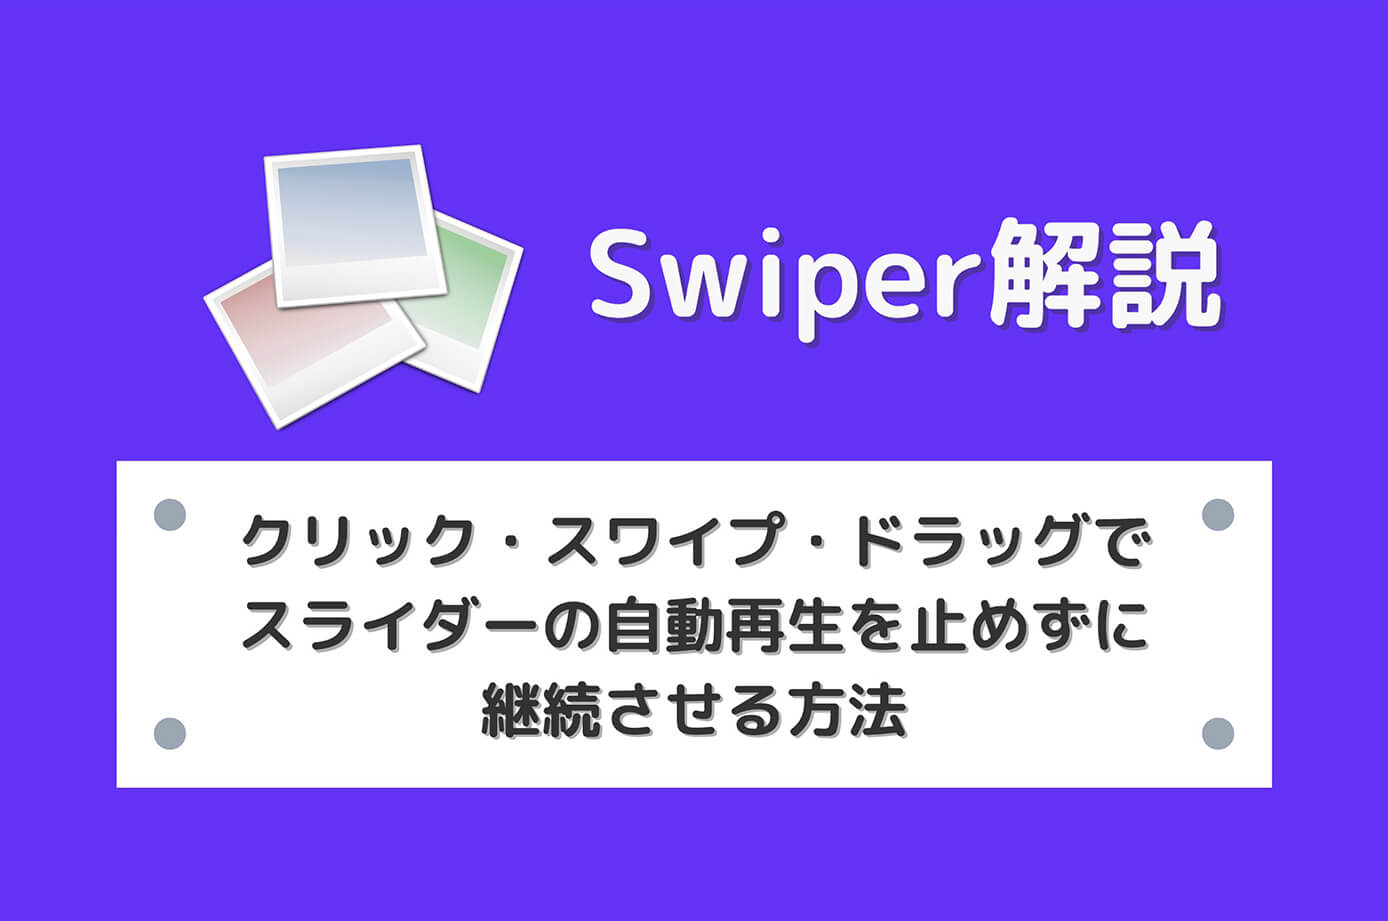 【Swiper】クリック・スワイプ・ドラッグでスライダーの自動再生を止めずに継続させる方法